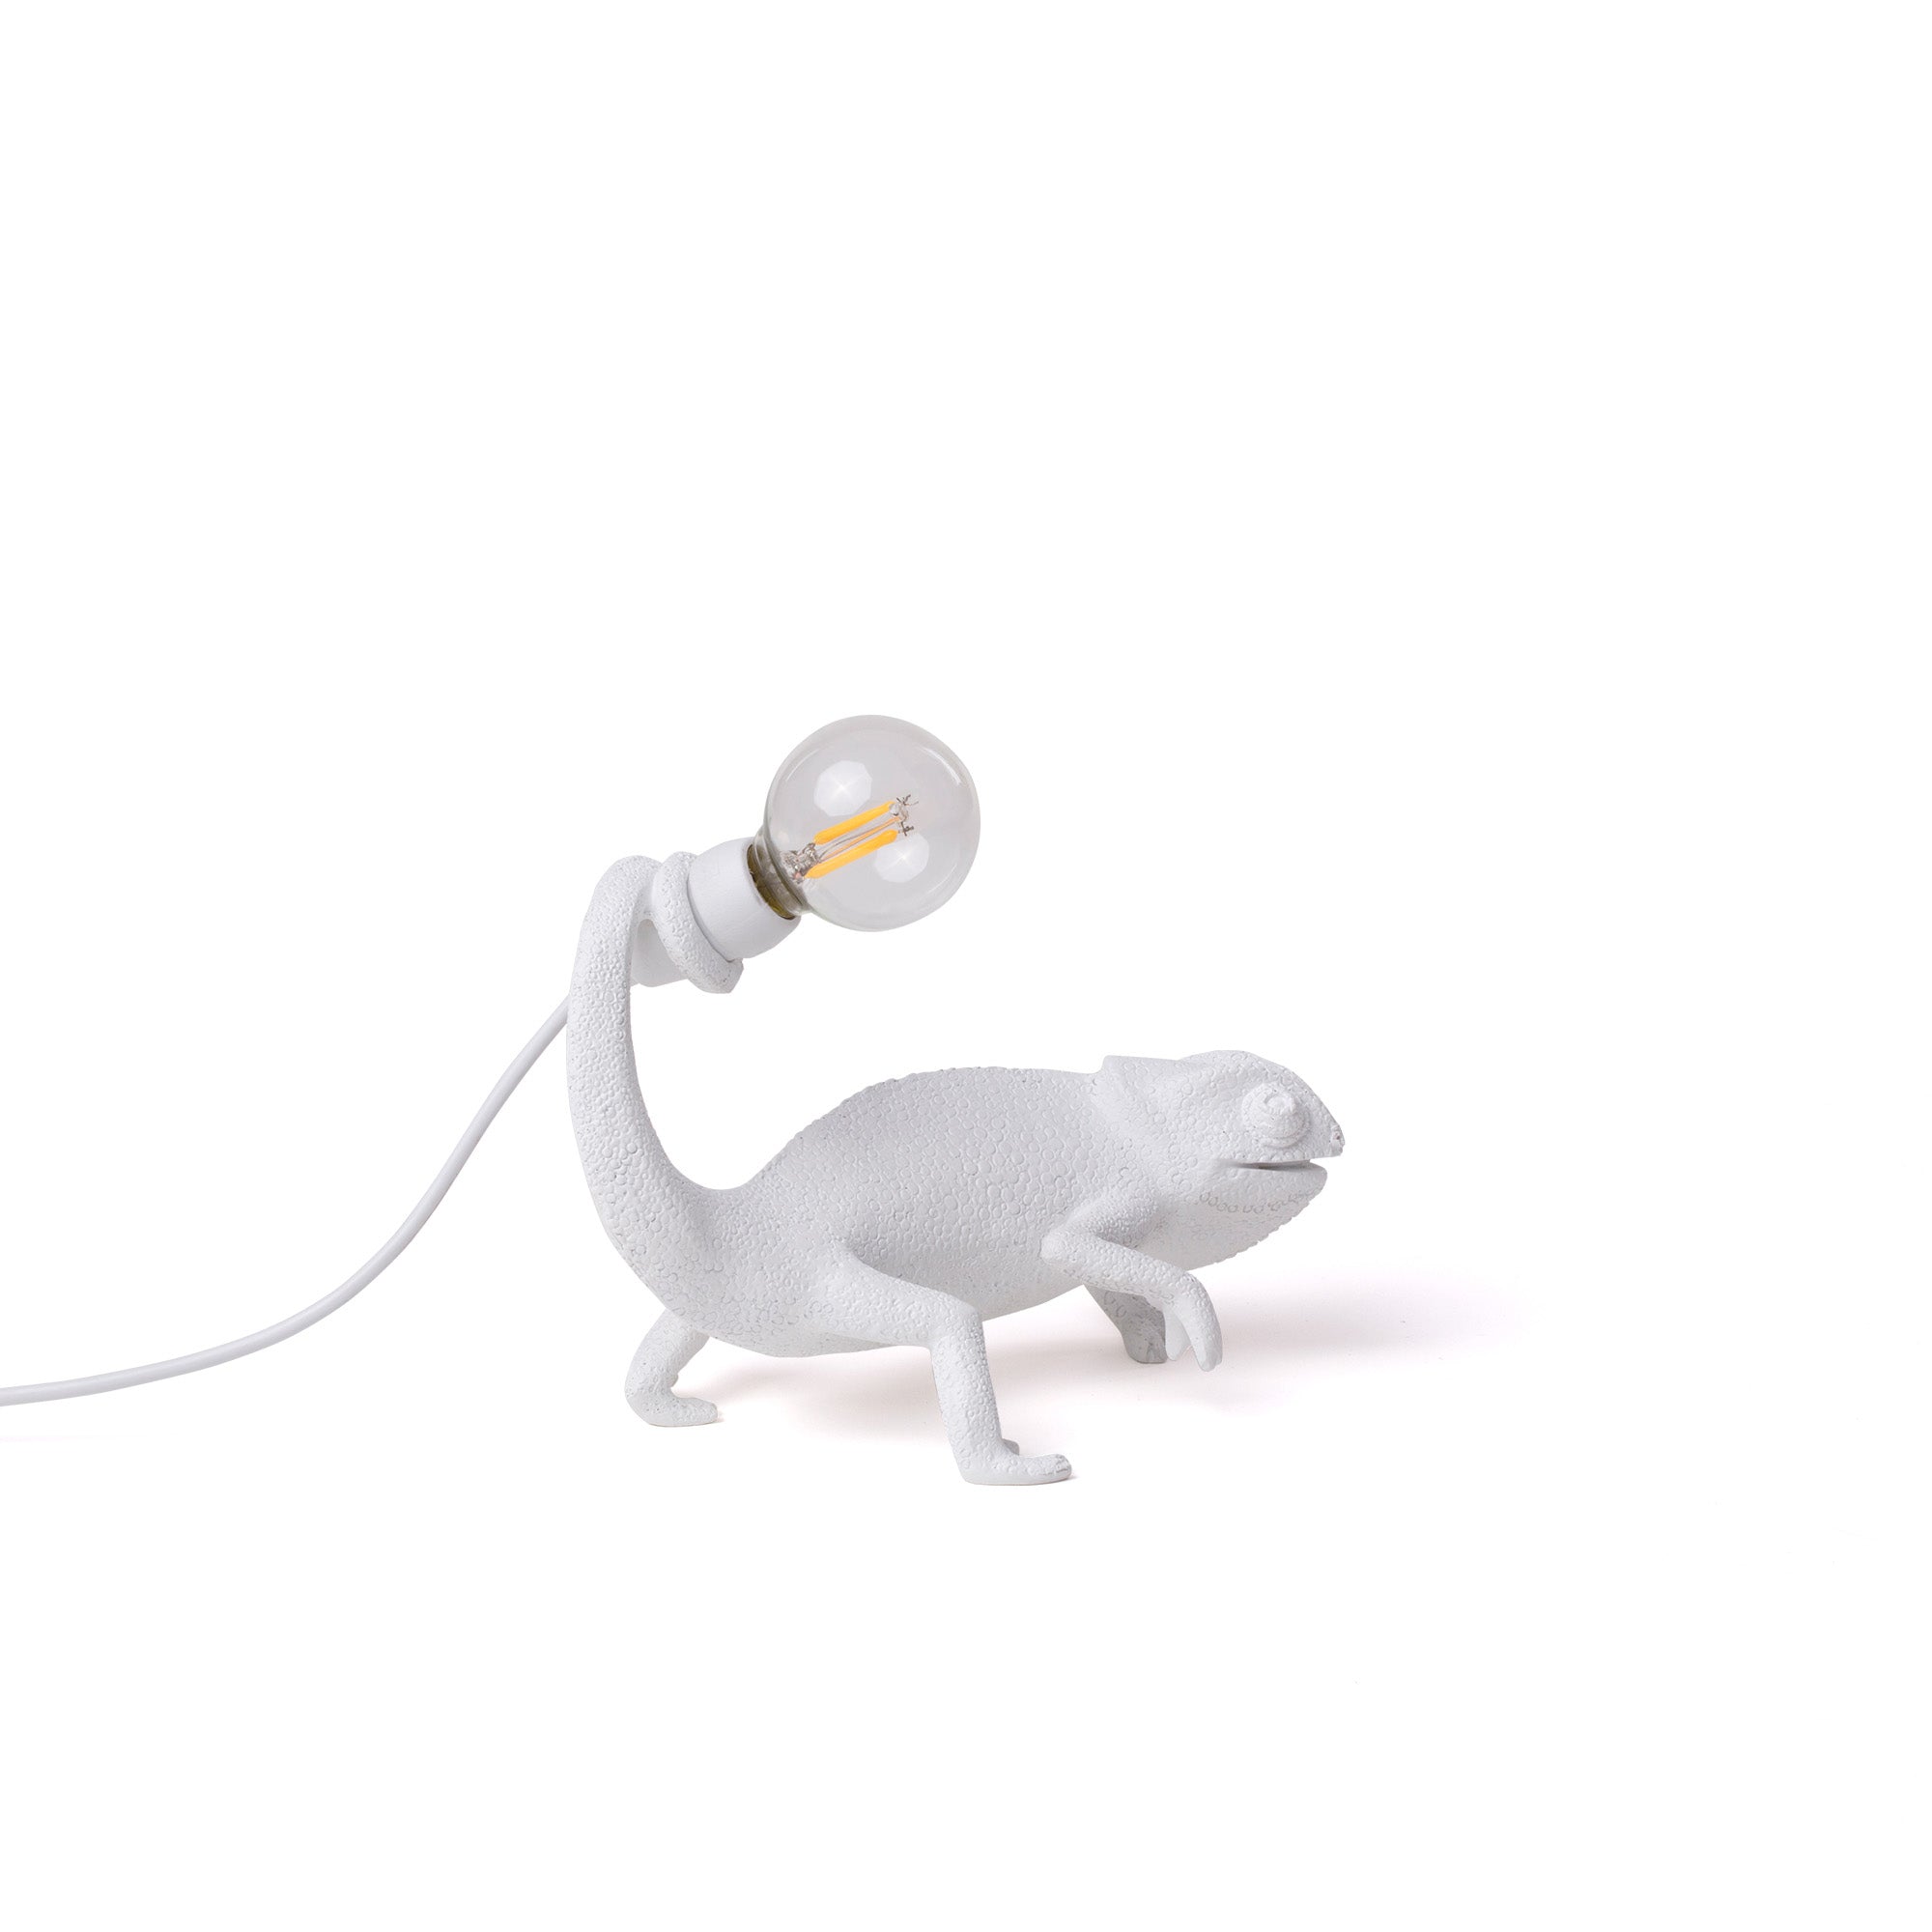 Seletti Chameleon Lamp in resin